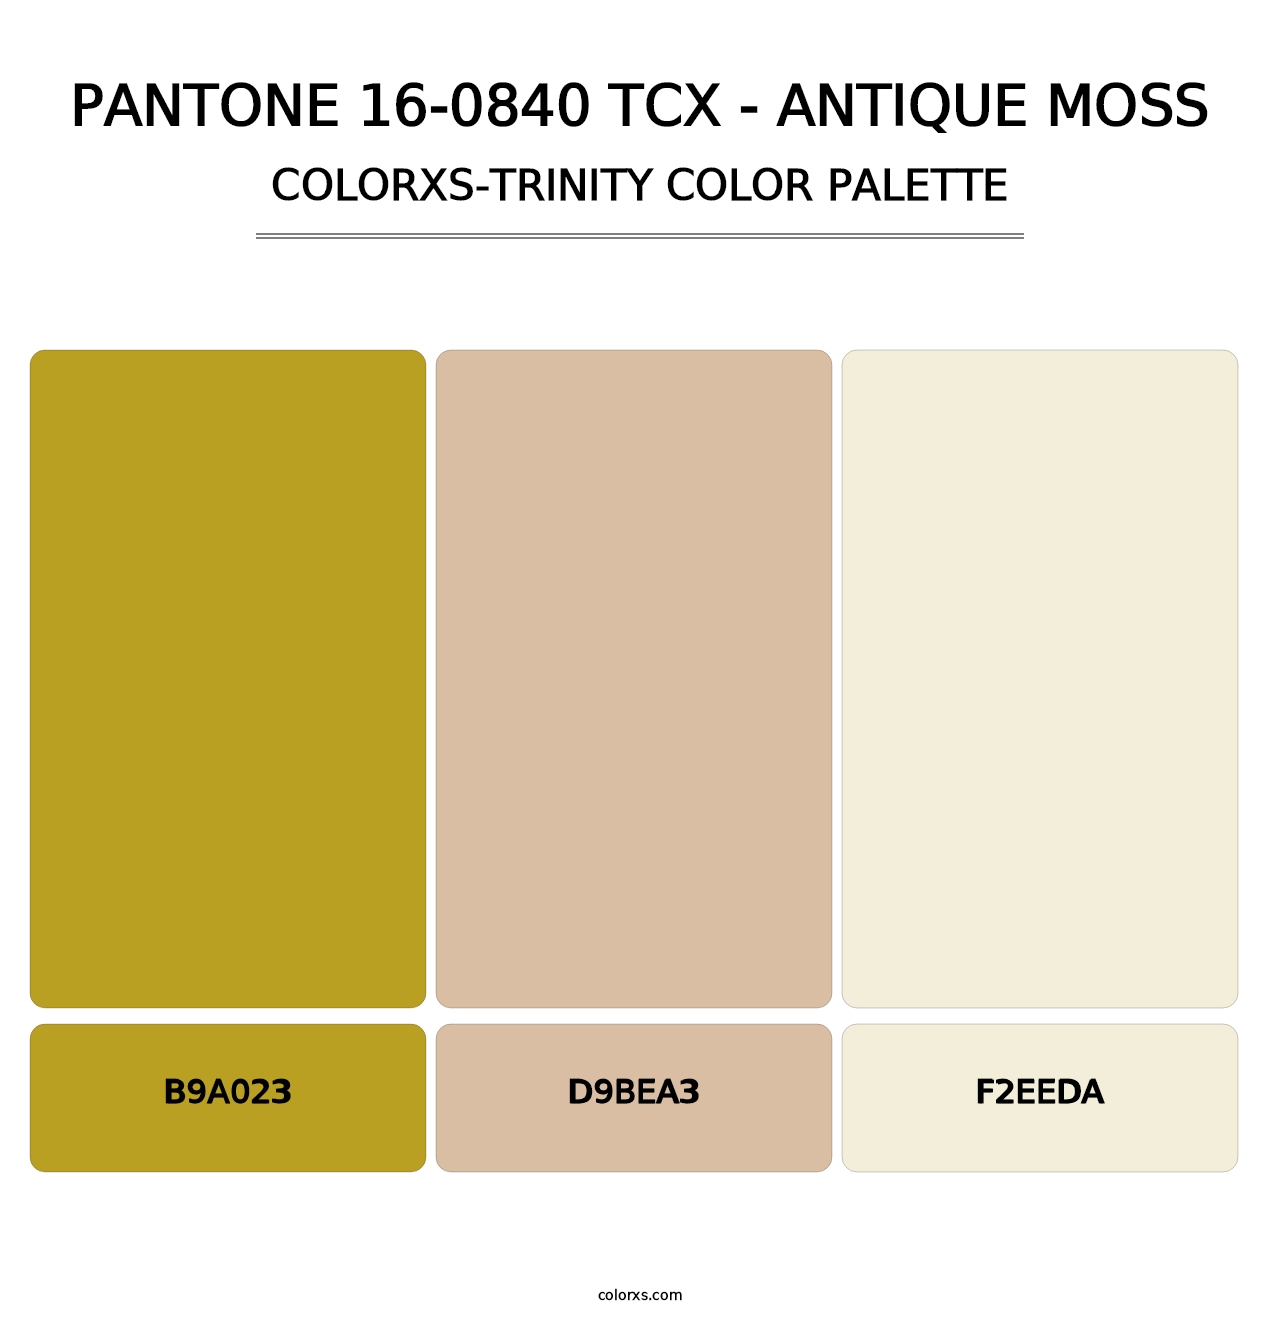 PANTONE 16-0840 TCX - Antique Moss - Colorxs Trinity Palette